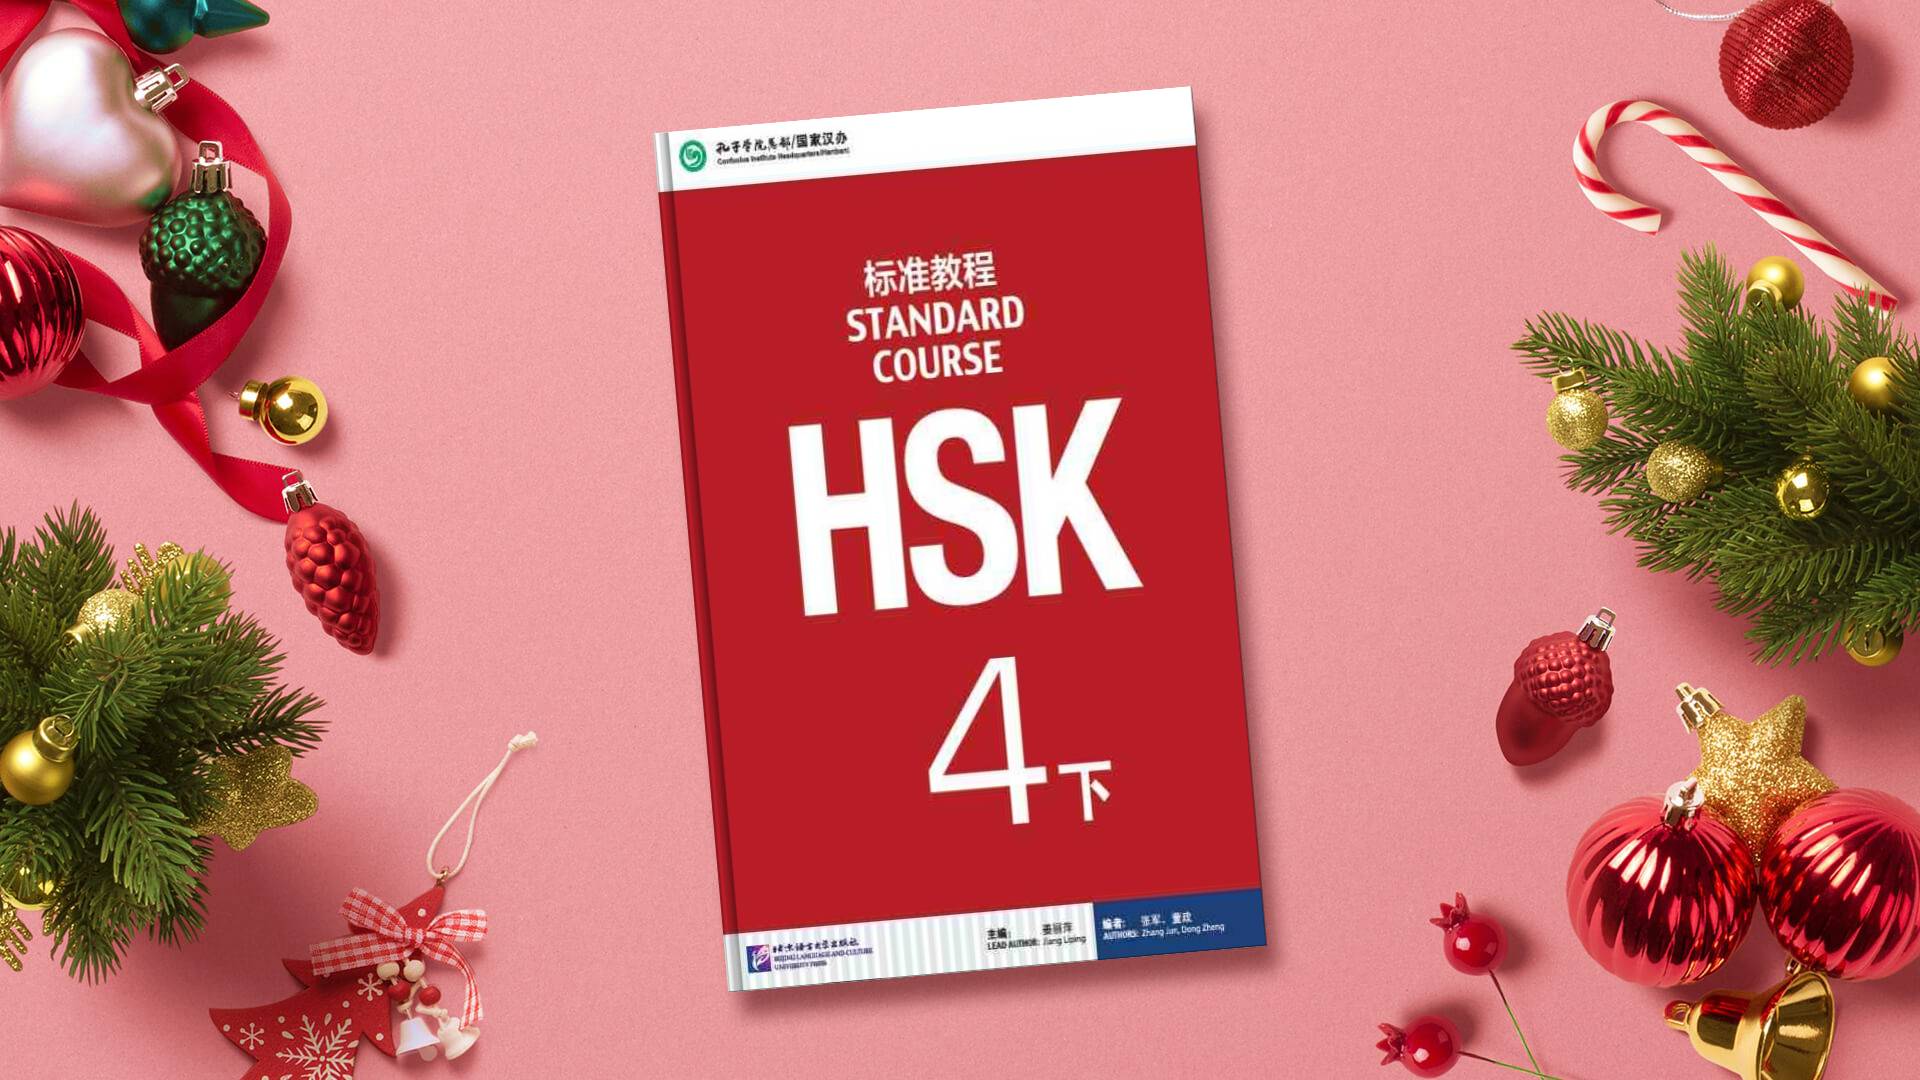 خرید کتاب زبان چینی | فروشگاه اینترنتی کتاب زبان | STANDARD COURSE HSK 4B | استاندارد کورس اچ اس کی چهار